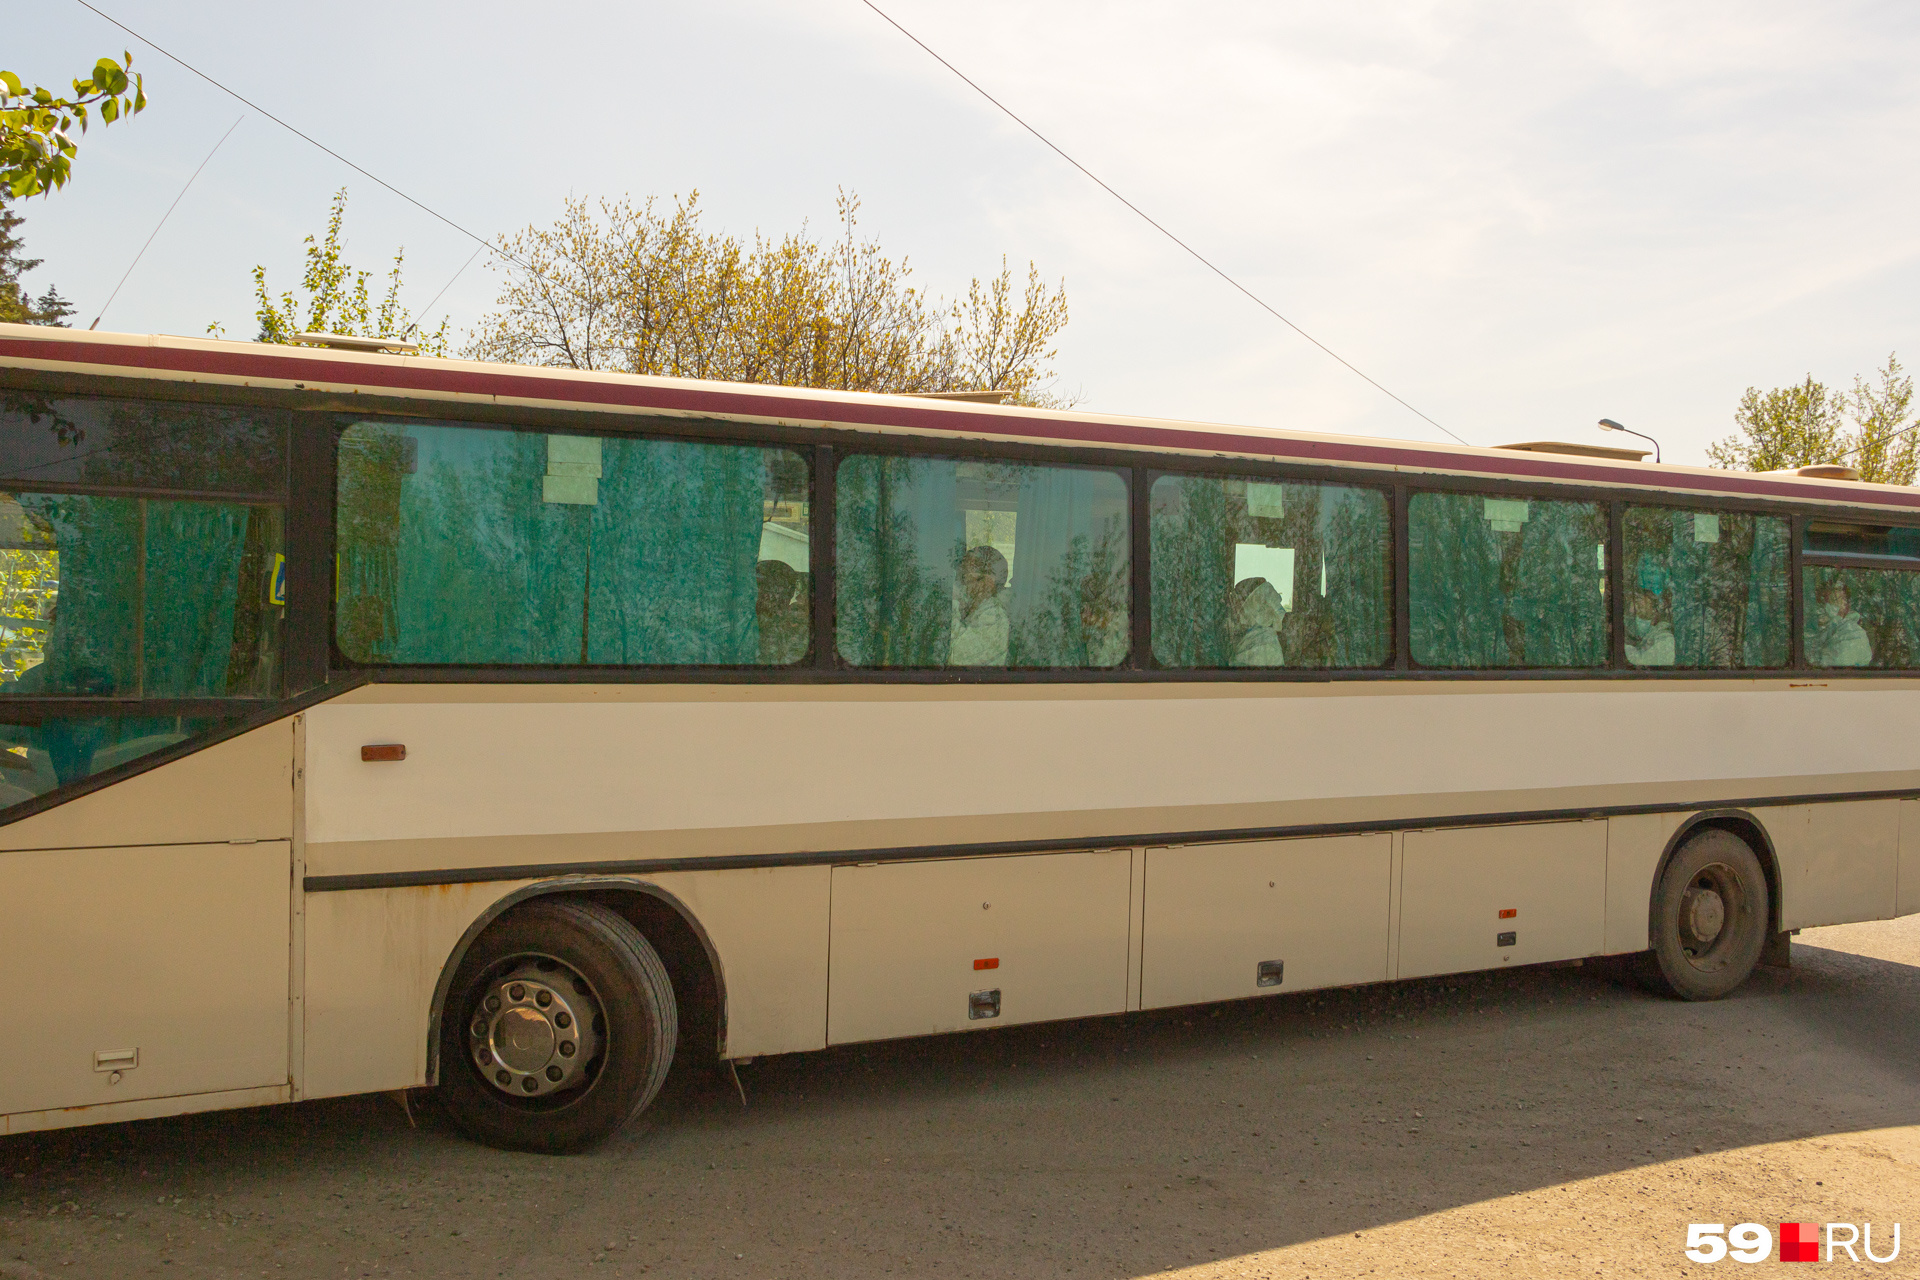 Всего в Пермь привезли 85 человек